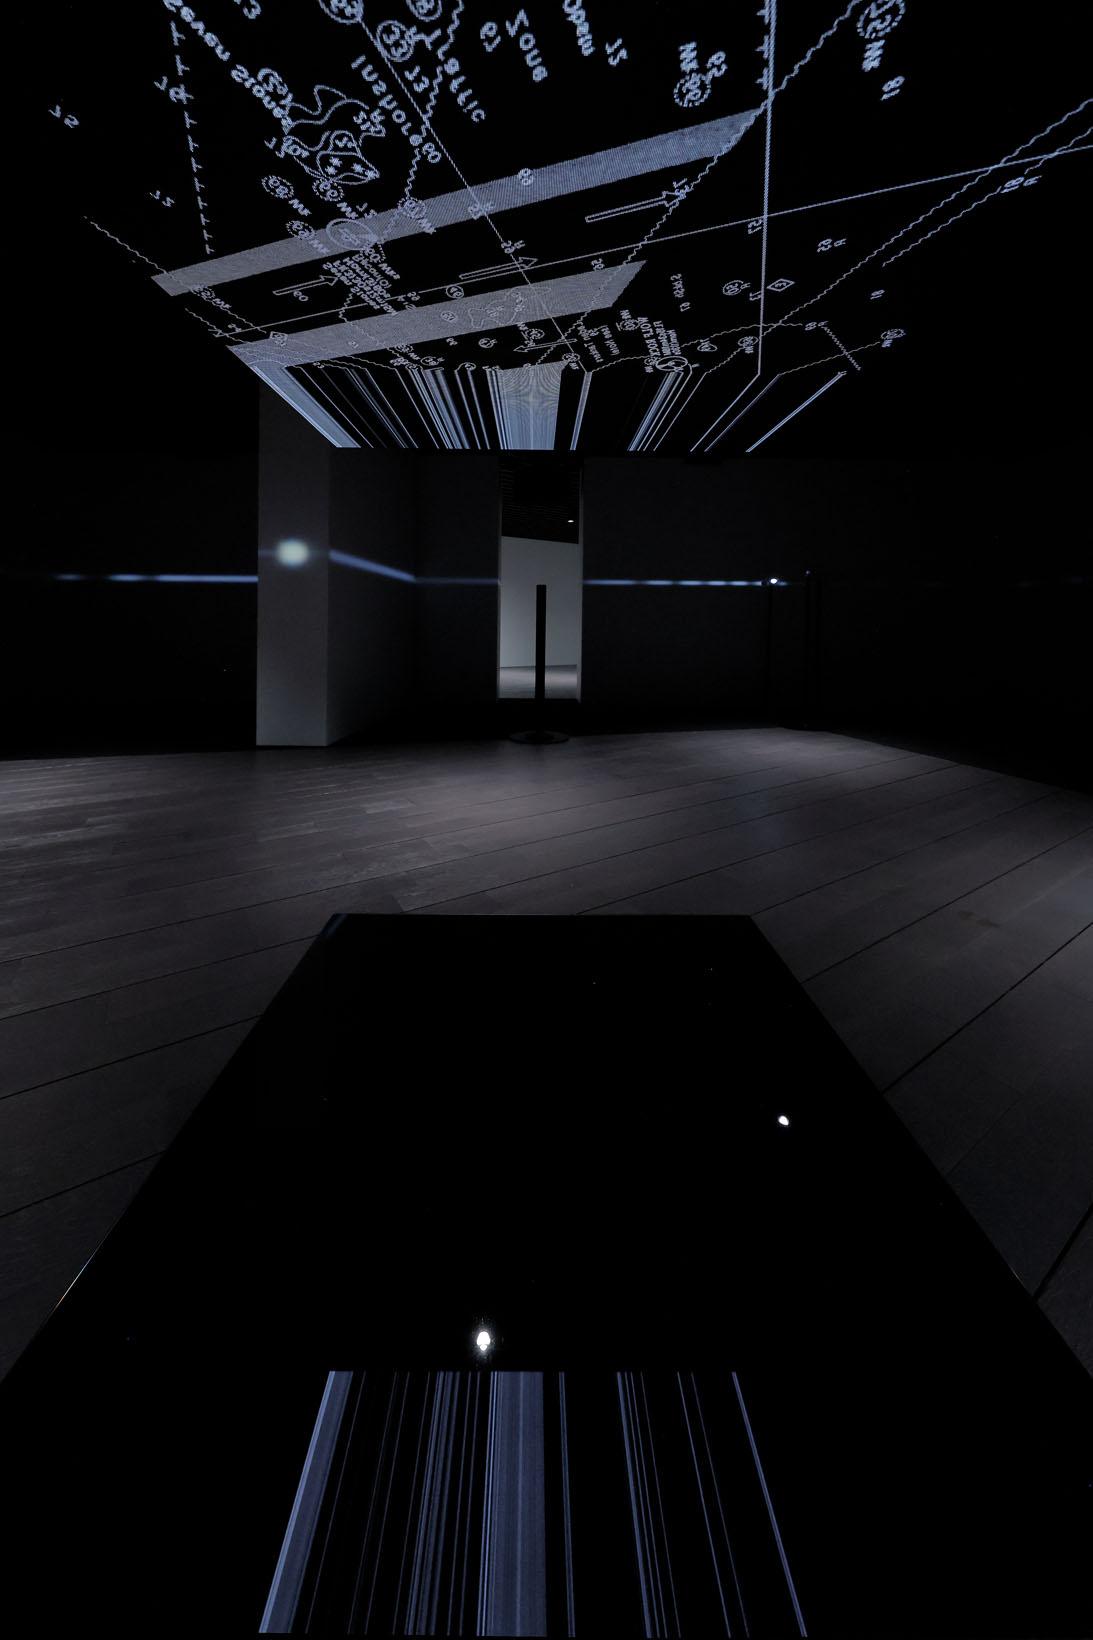 頭上のビデオパネルの画像が床の黒い鏡に映し出される。